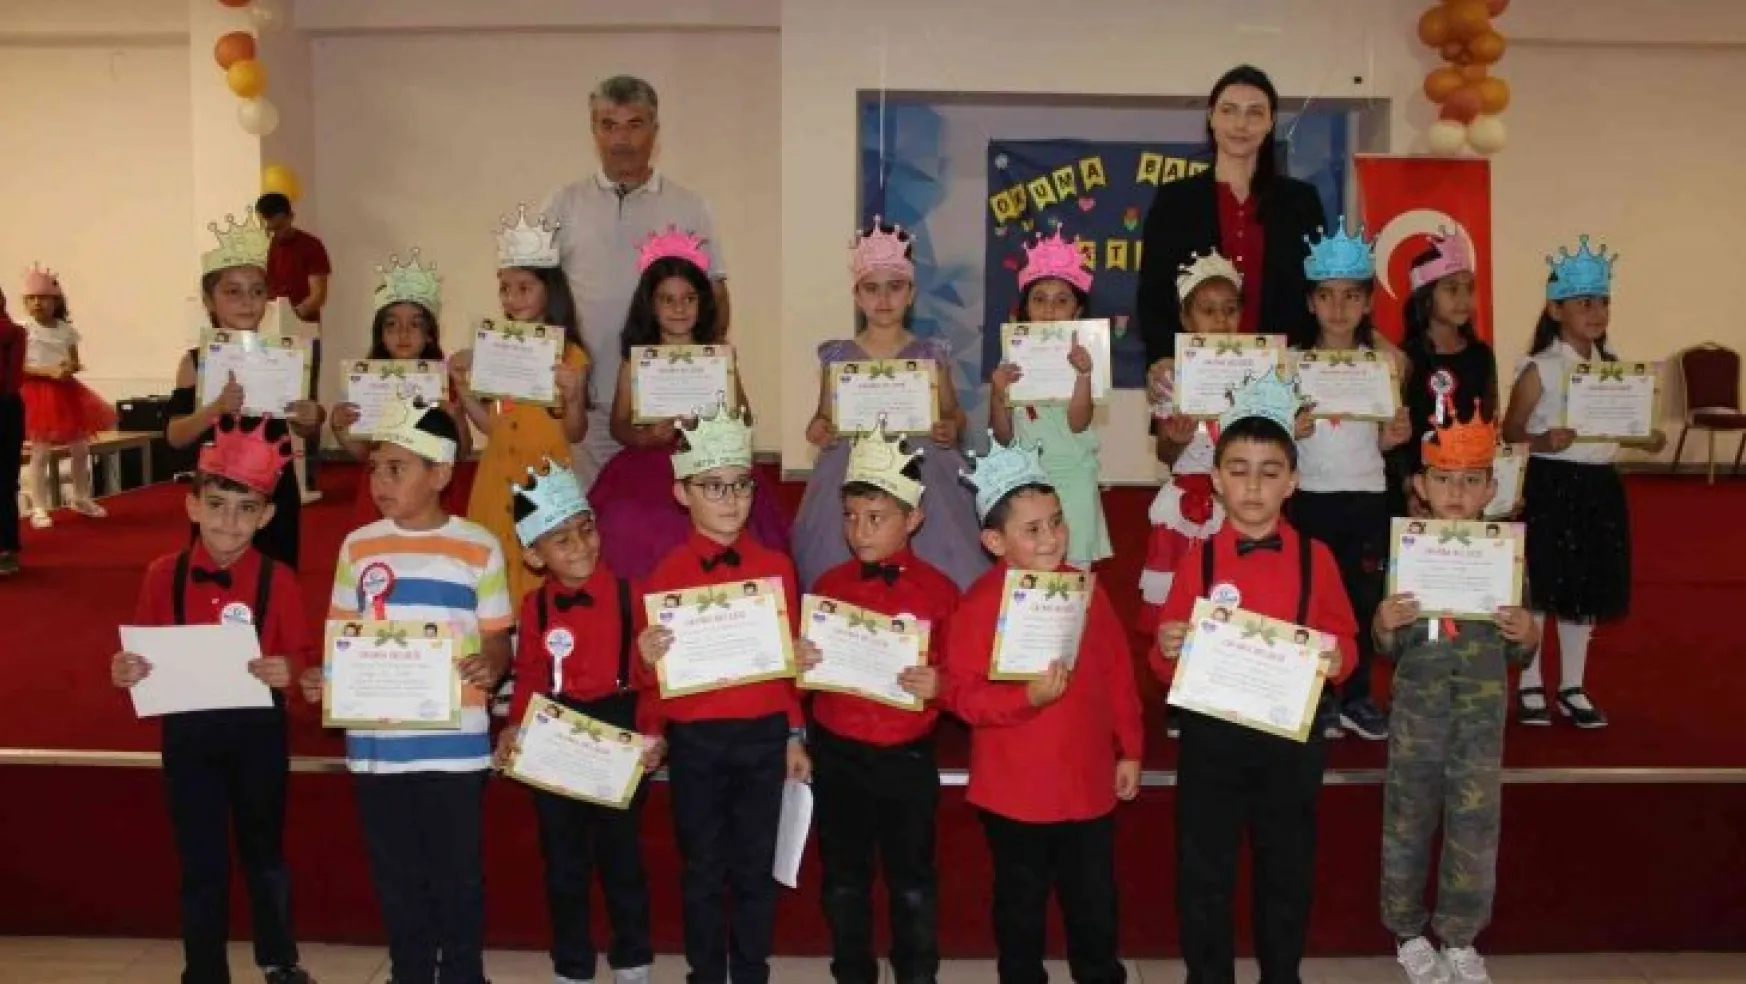 Tomarza 50 Yıl İlkokulu'ndan okuma bayramı etkinliği